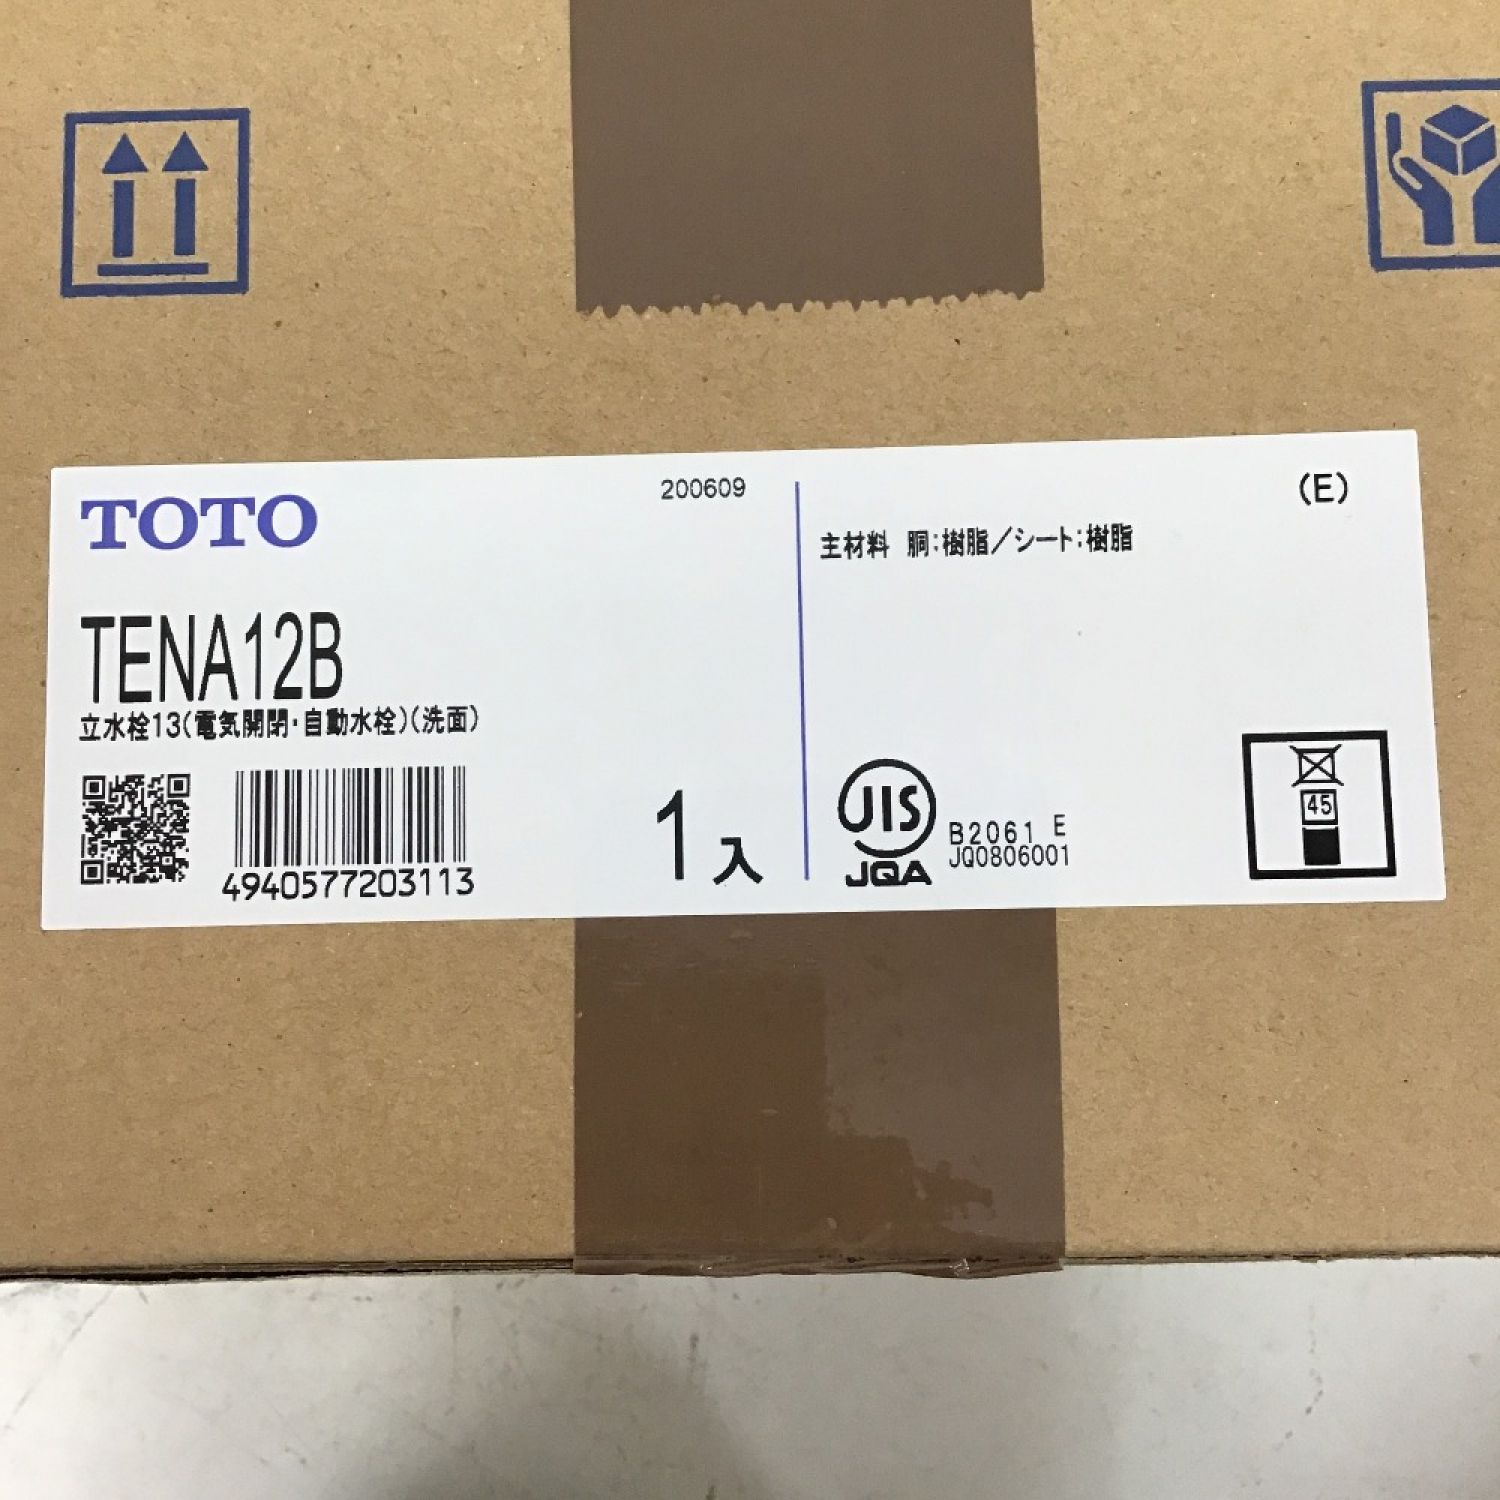 初回限定】 【新品】 TOTO TENA12B (100V) A 中古】◇◇ 自動水栓 アクアオート アクアオート 